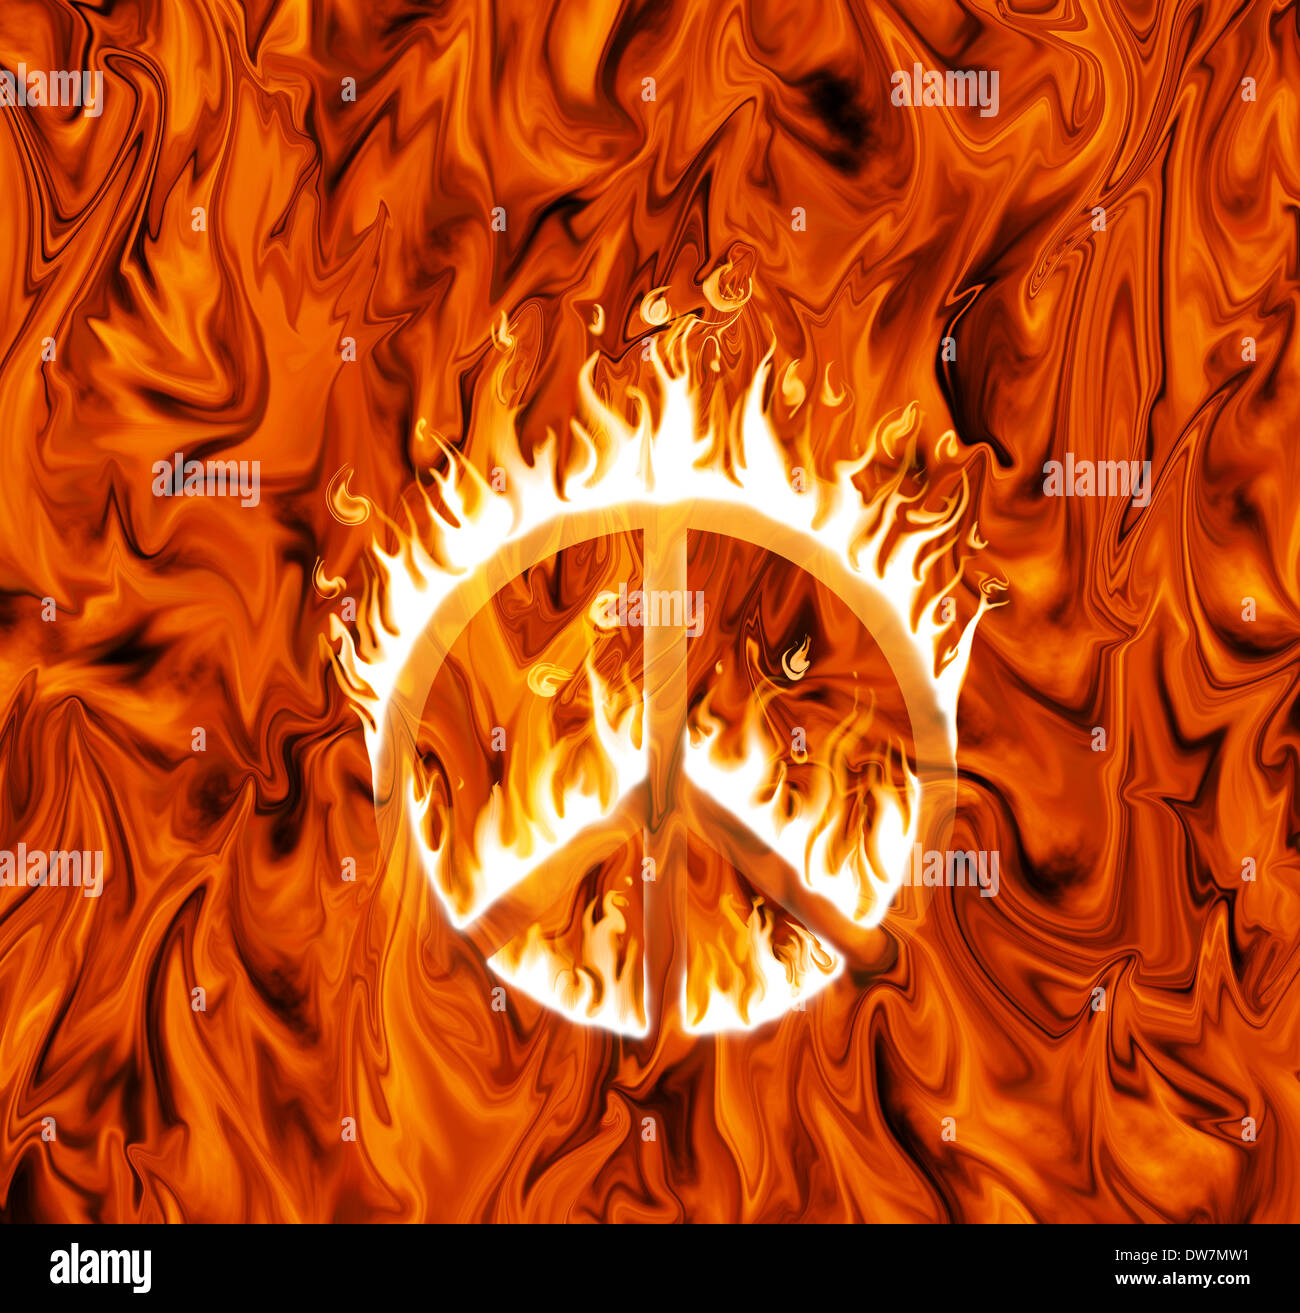 Signo de paz envuelta en llamas, sobre fondo infernal Foto de stock